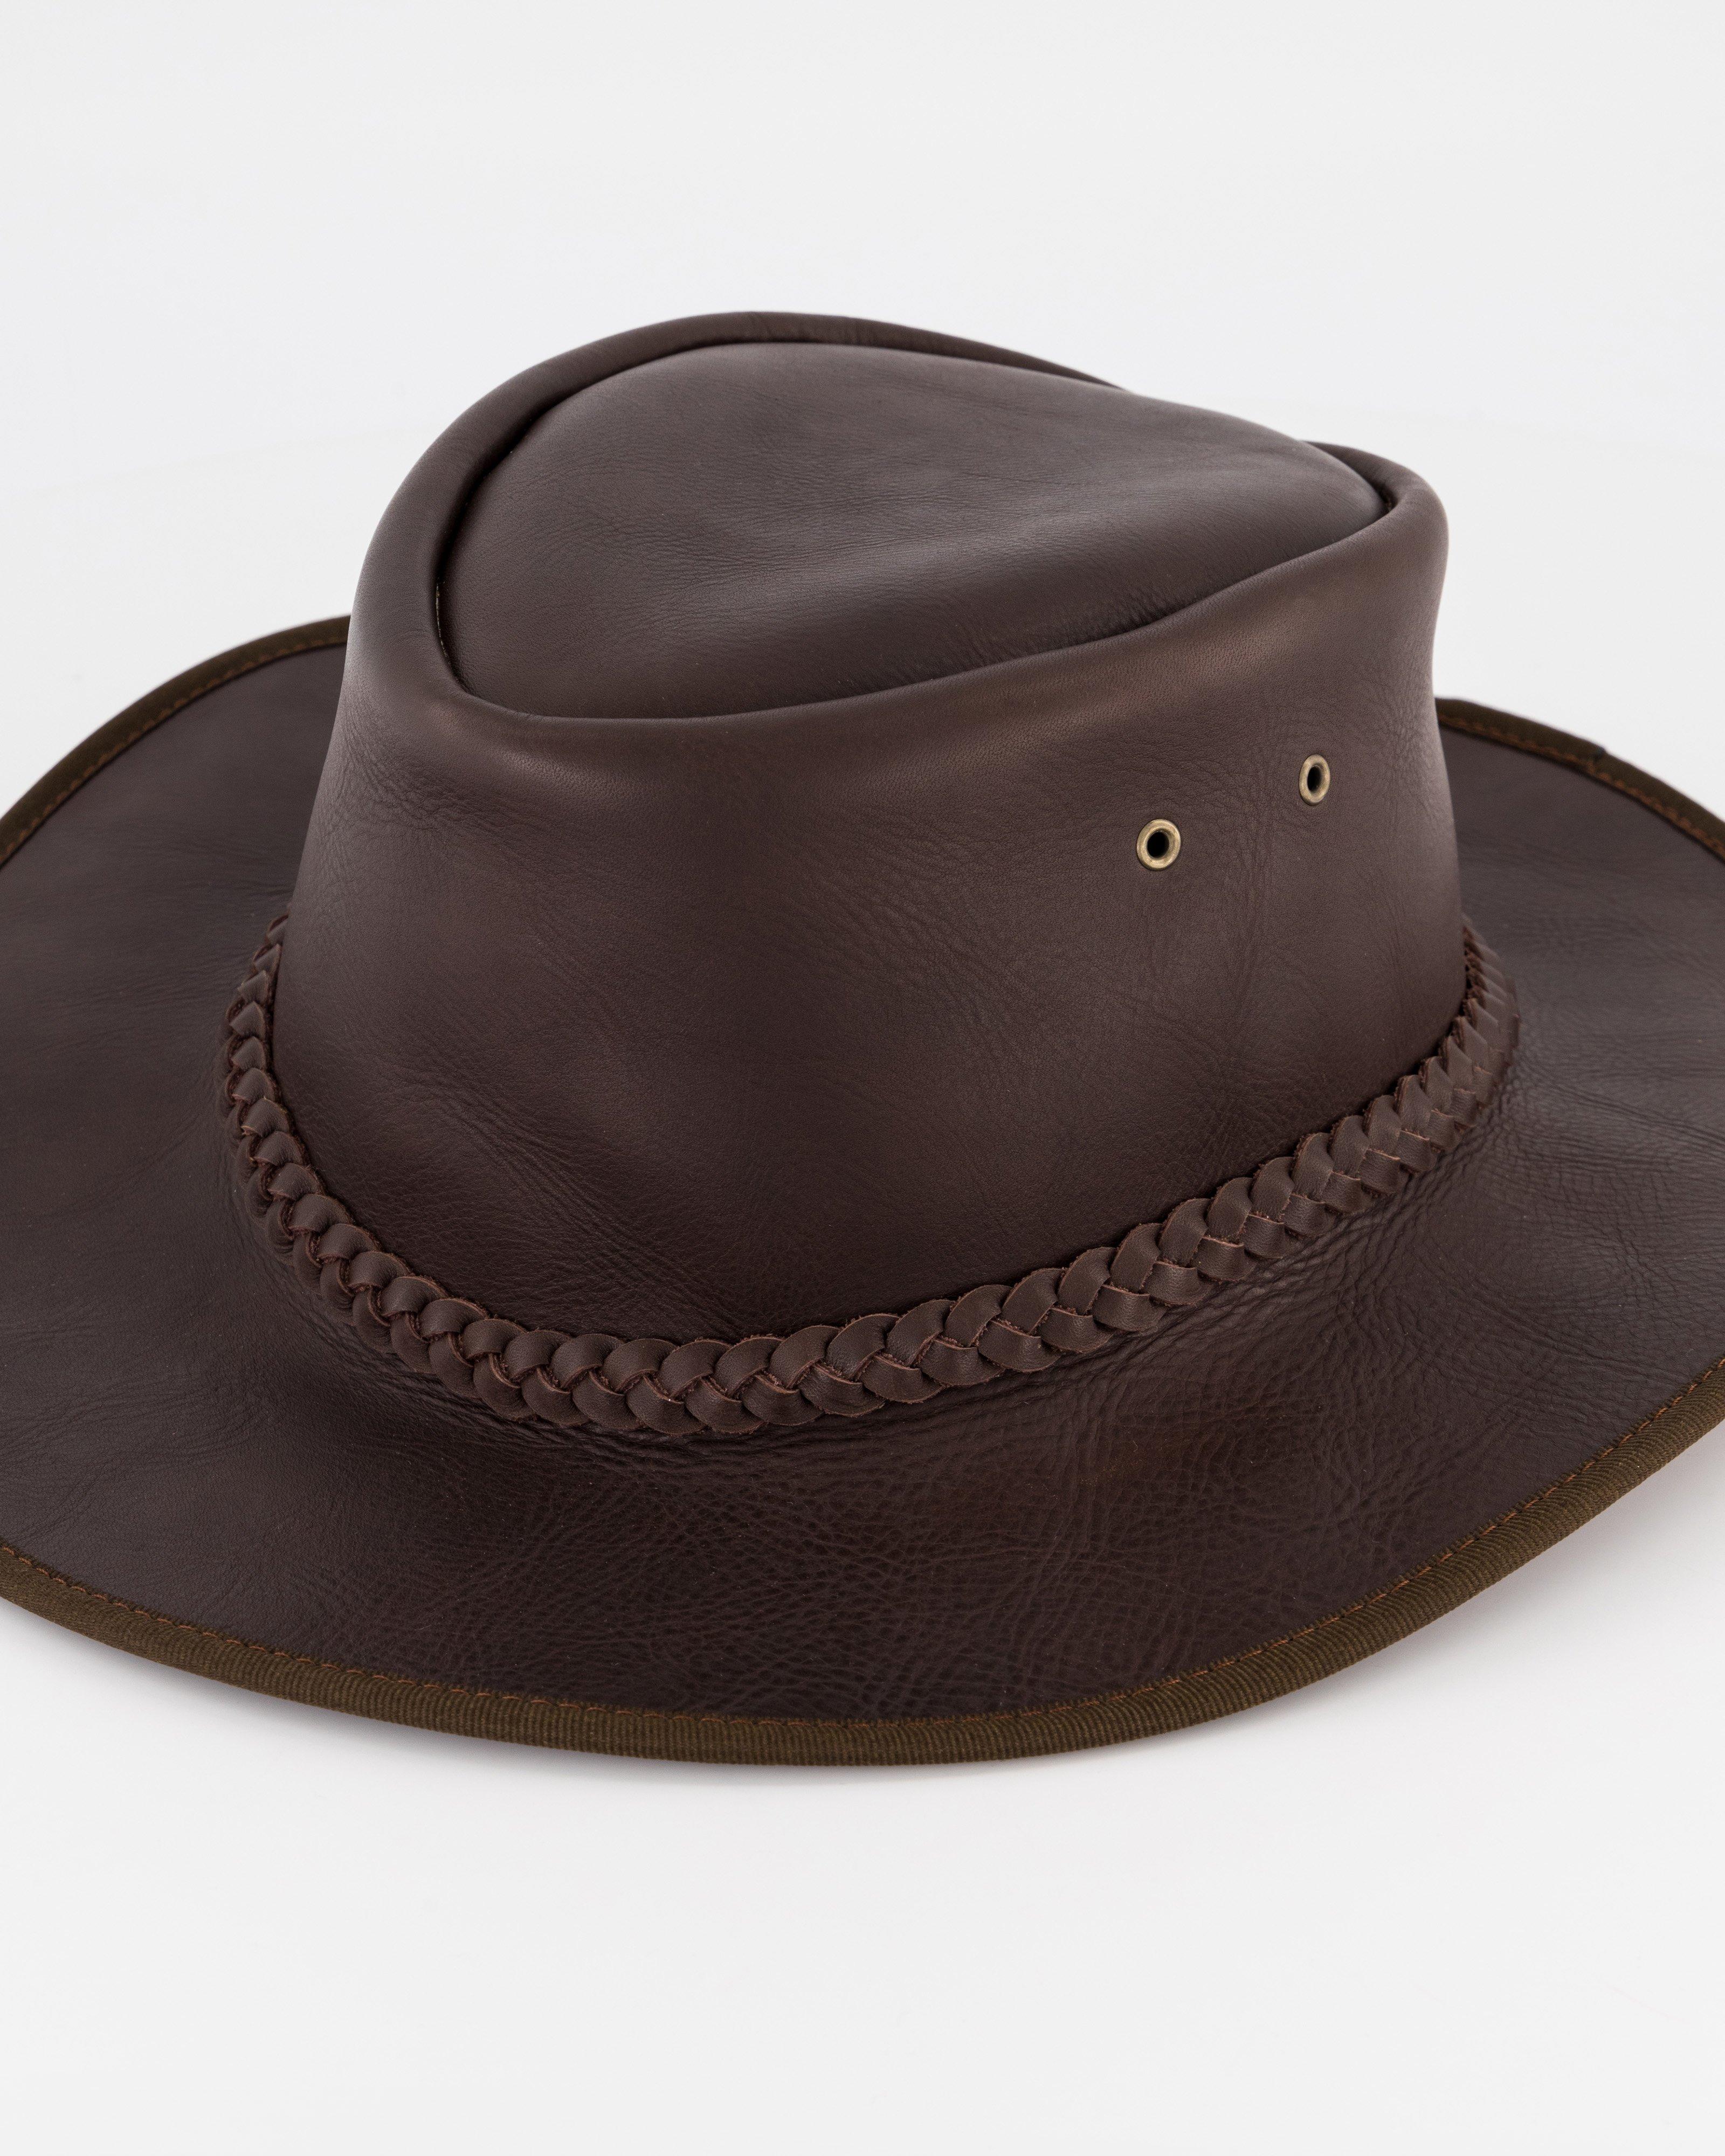 Cape Union Survivor Leather Hat